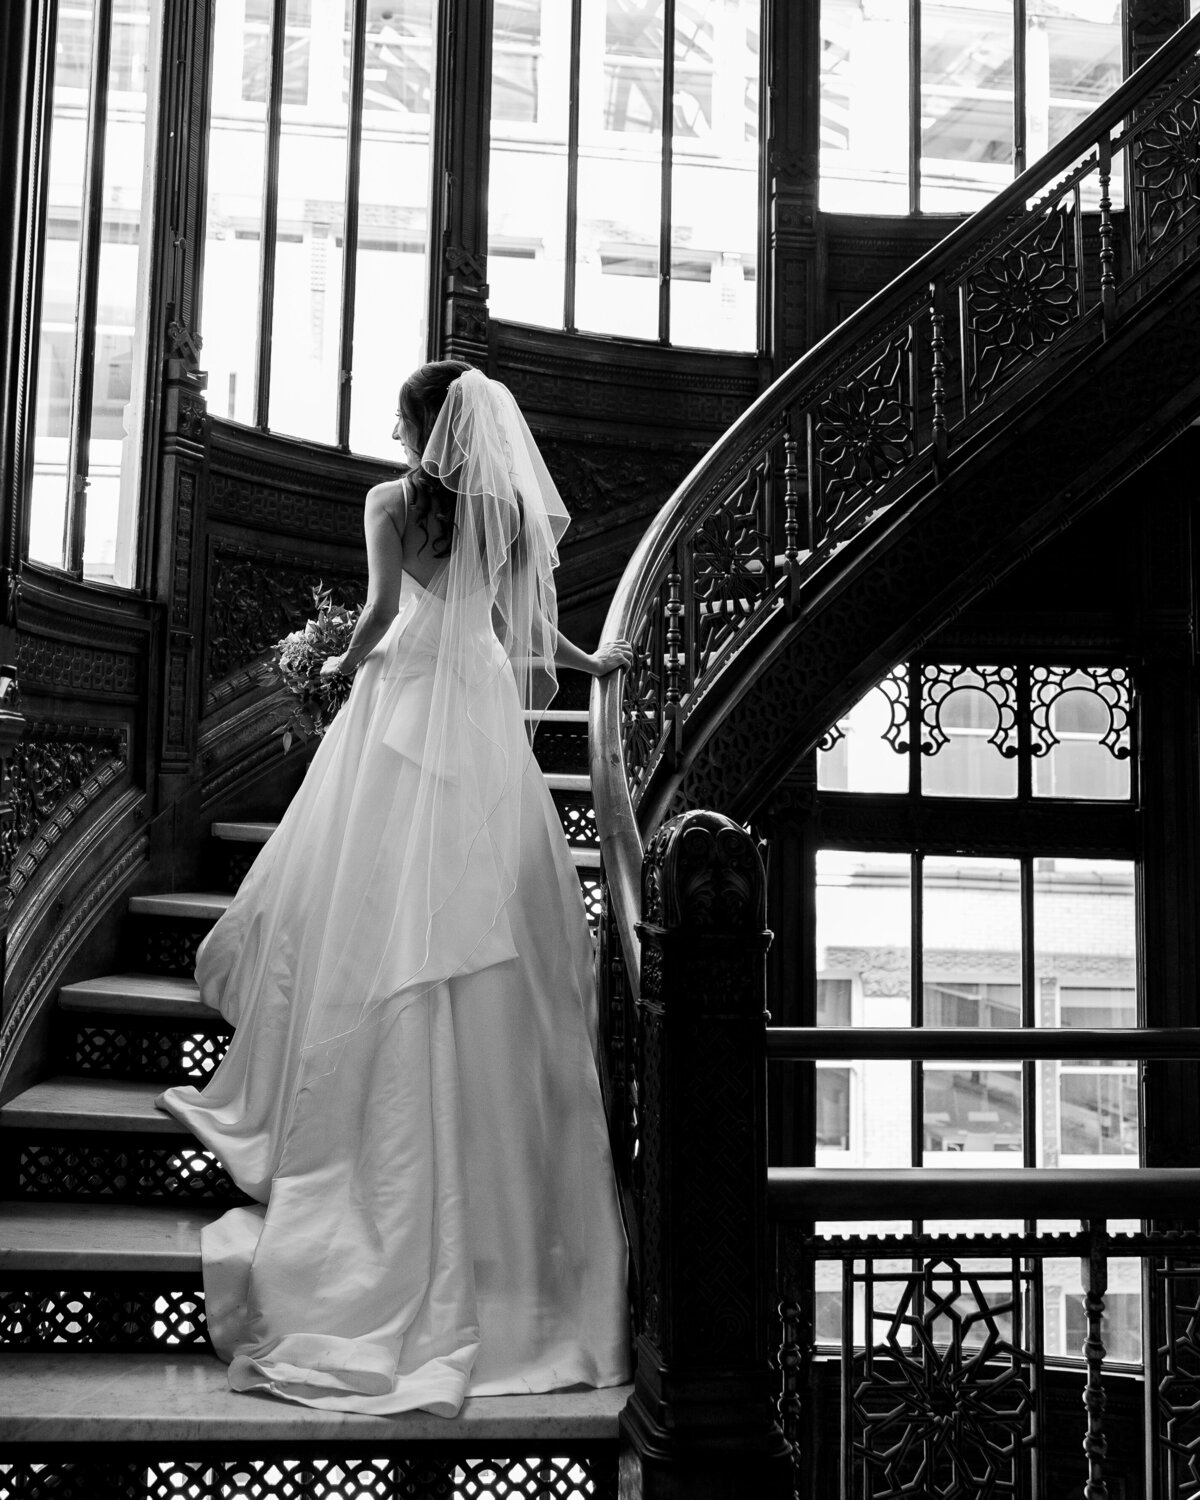 Daniela Cardili Photography Chicago Illinois Wedding Engagement Photographer Timeline Luxury Classic  Destination Worldwide Traveling Travel3540